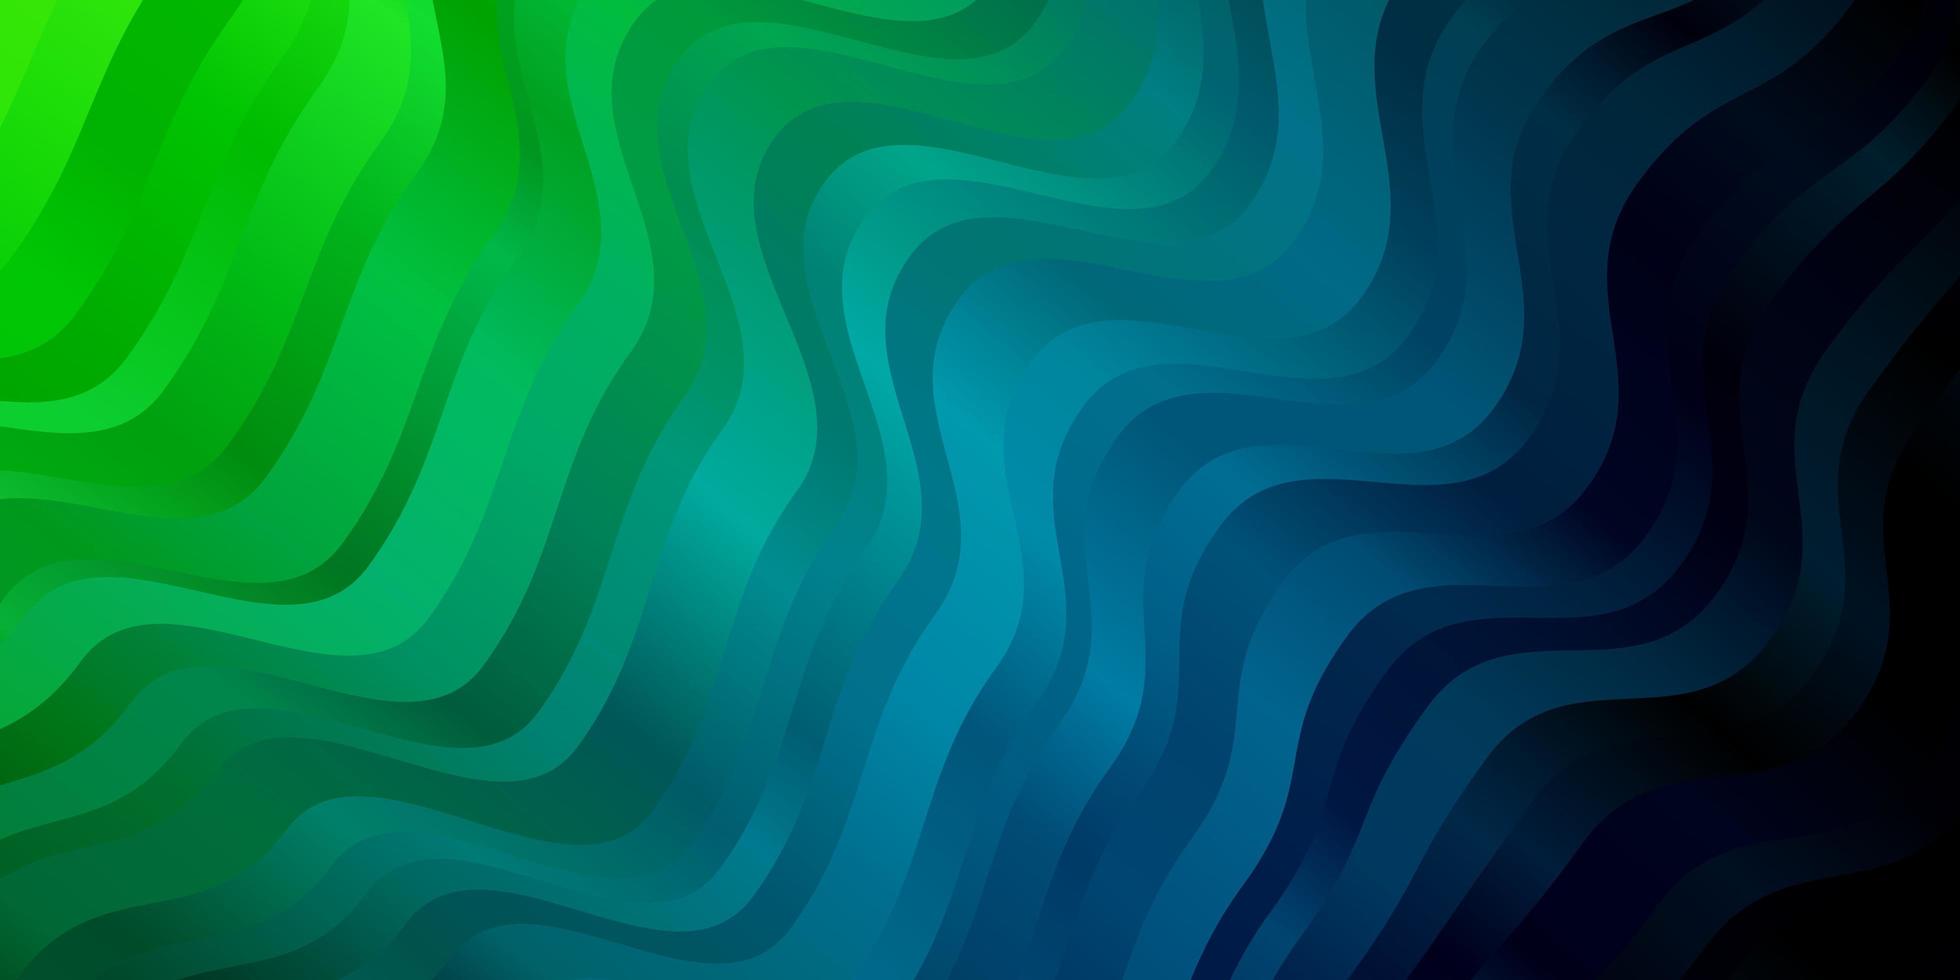 ljusblått, grönt vektormönster med linjer. vektor